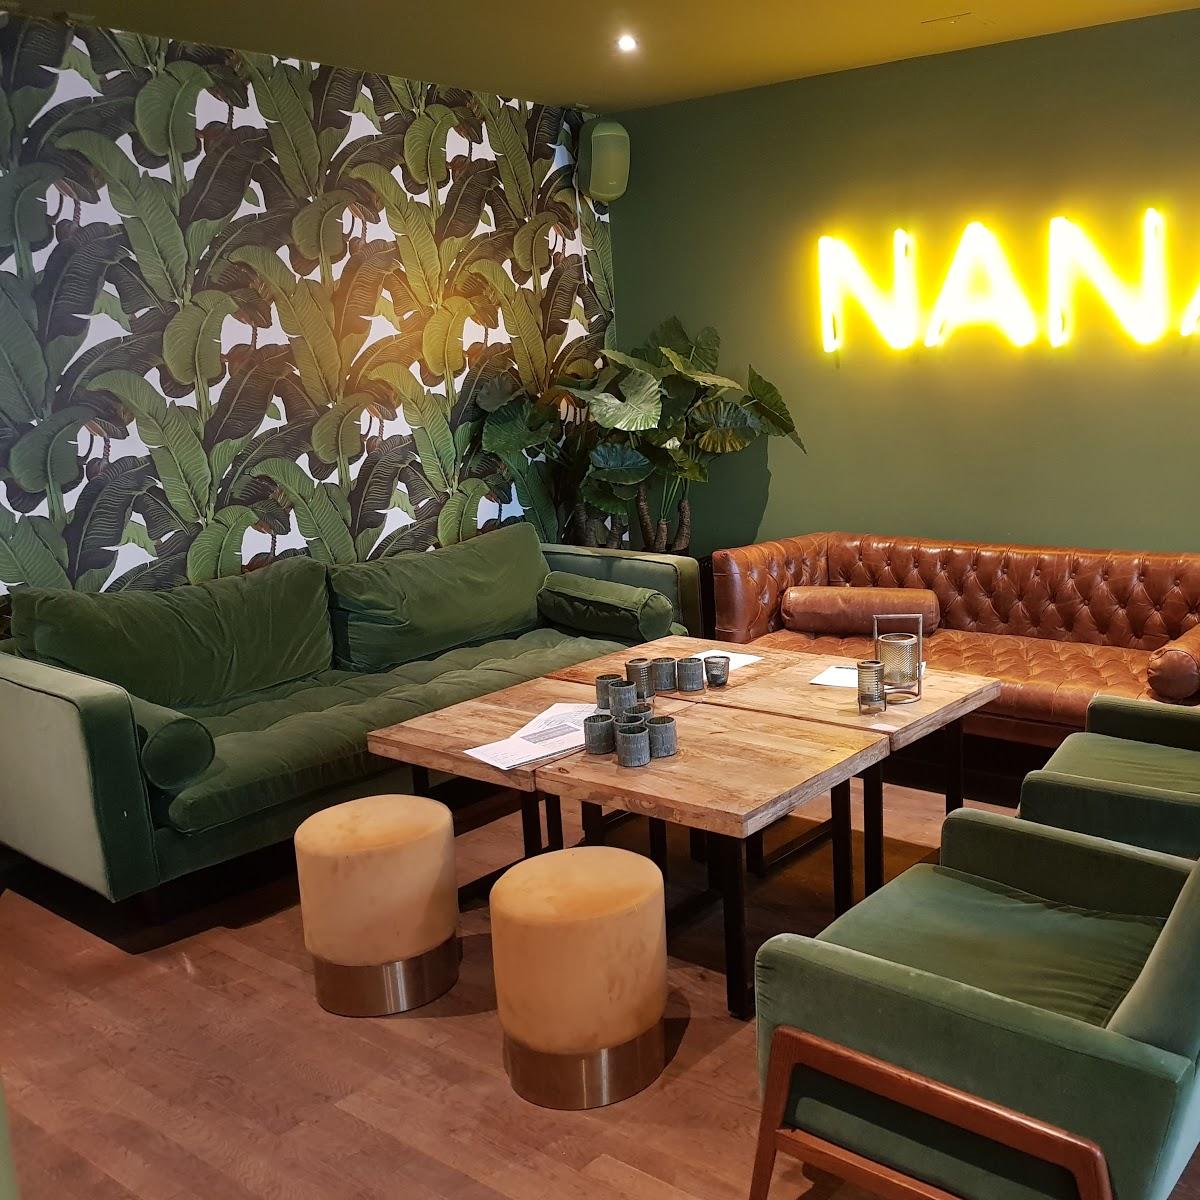 Restaurant "Nana Lieblingsbar & Café" in Heidelberg